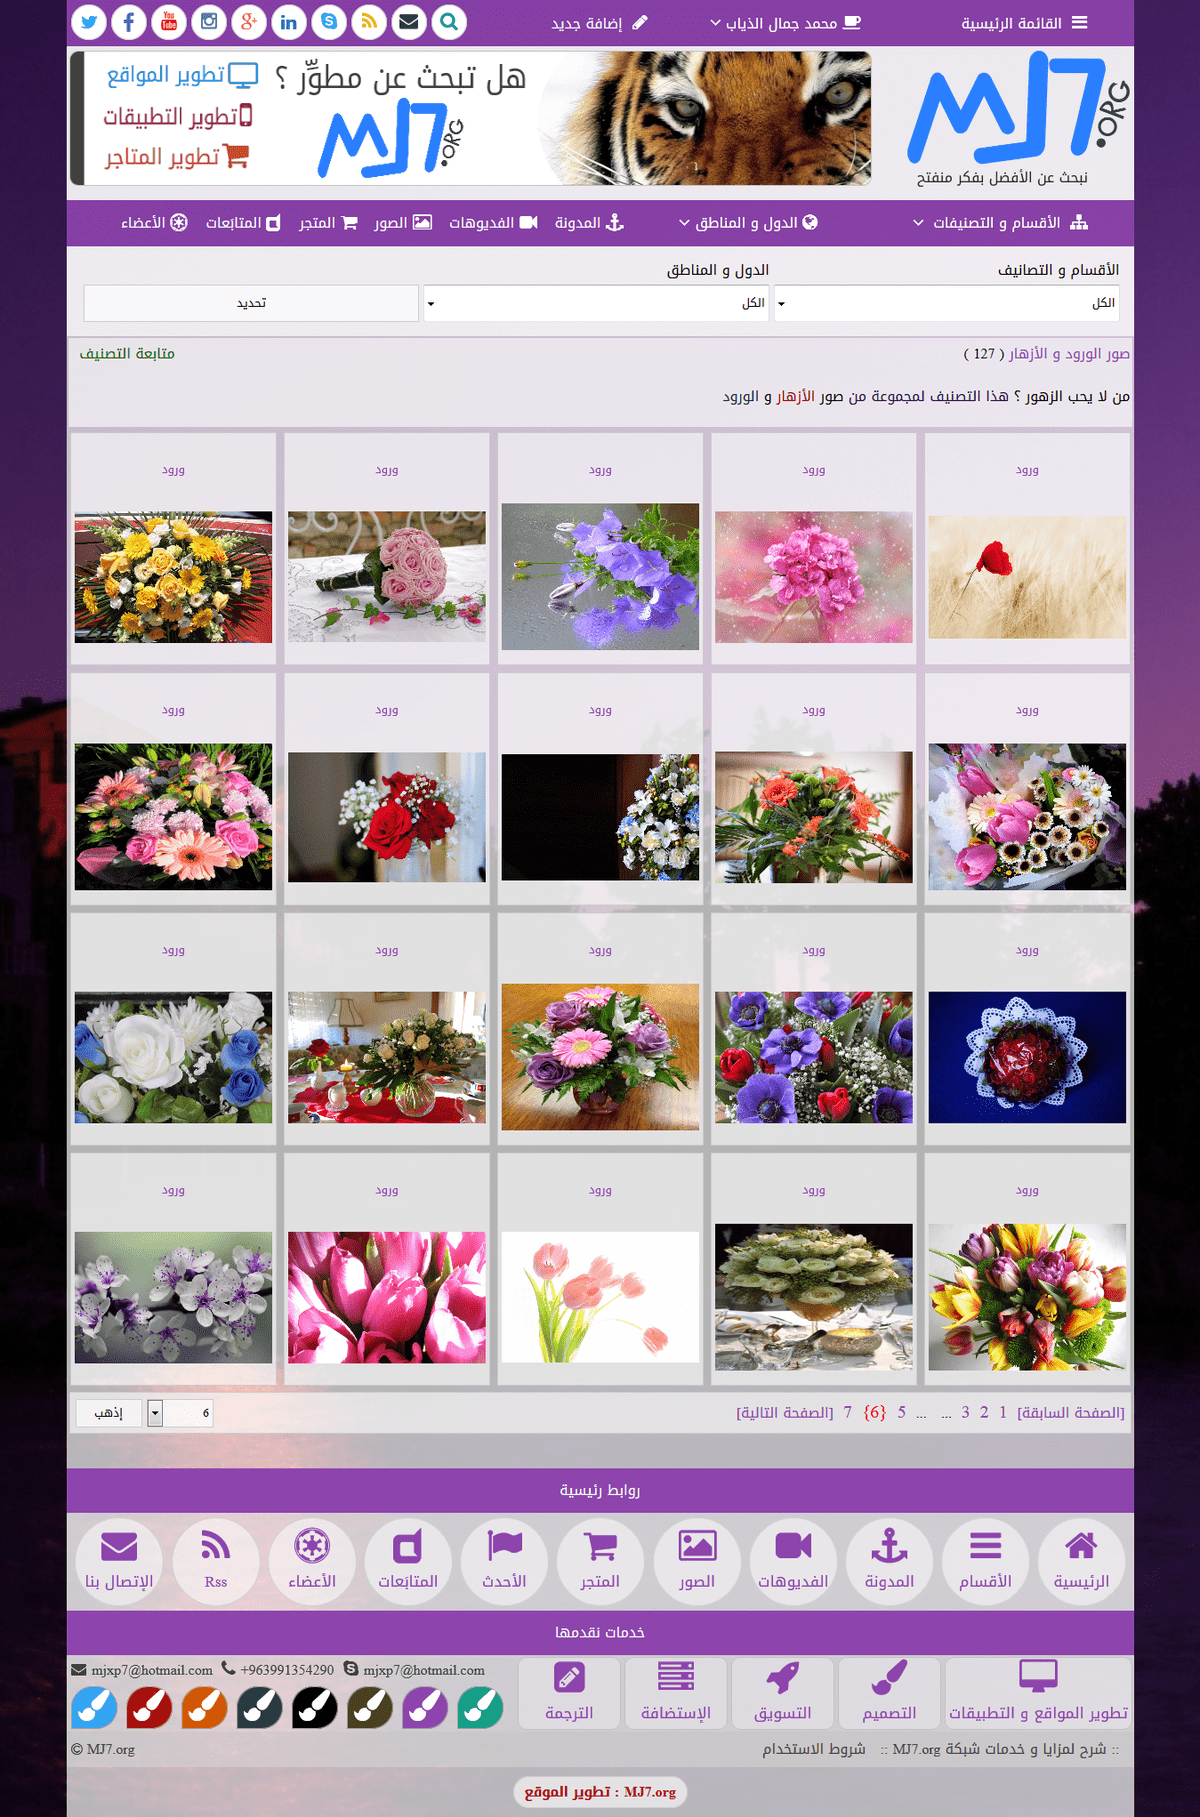 صور_الورود_و_الأزهار_-_شبكة_MJ7.org